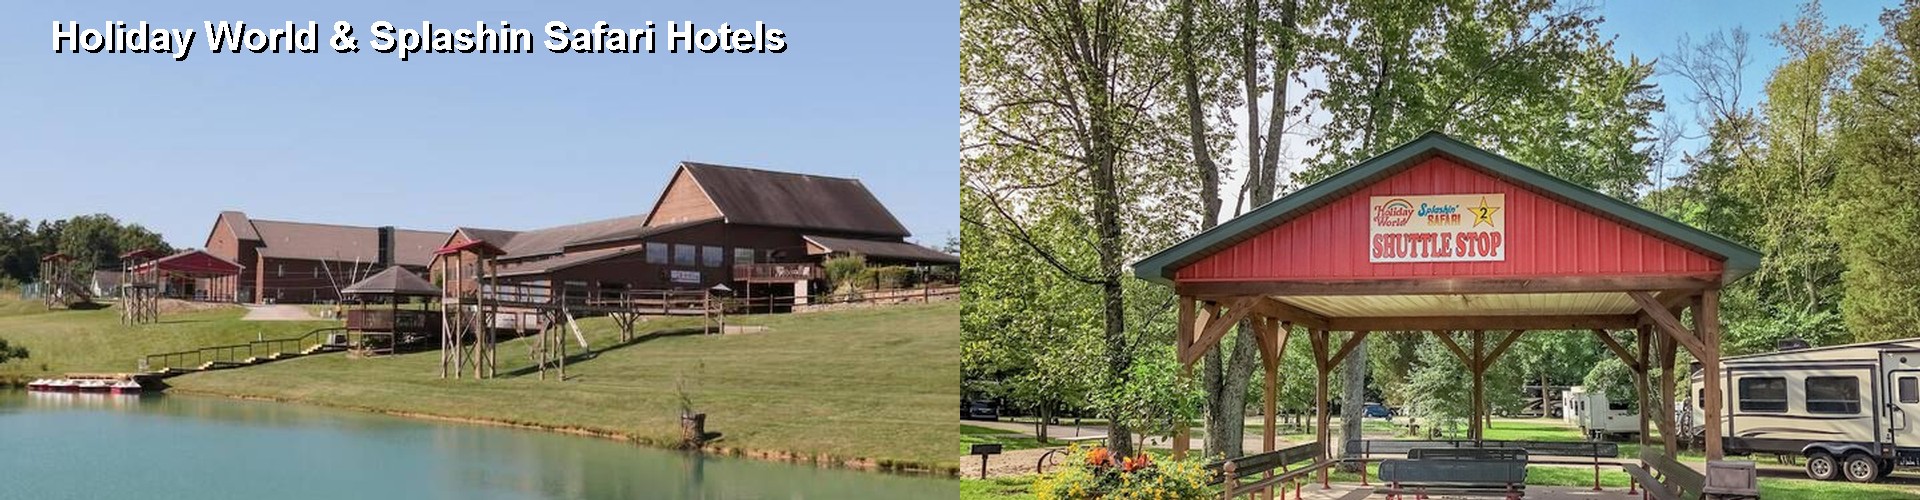 3 Best Hotels near Holiday World & Splashin Safari